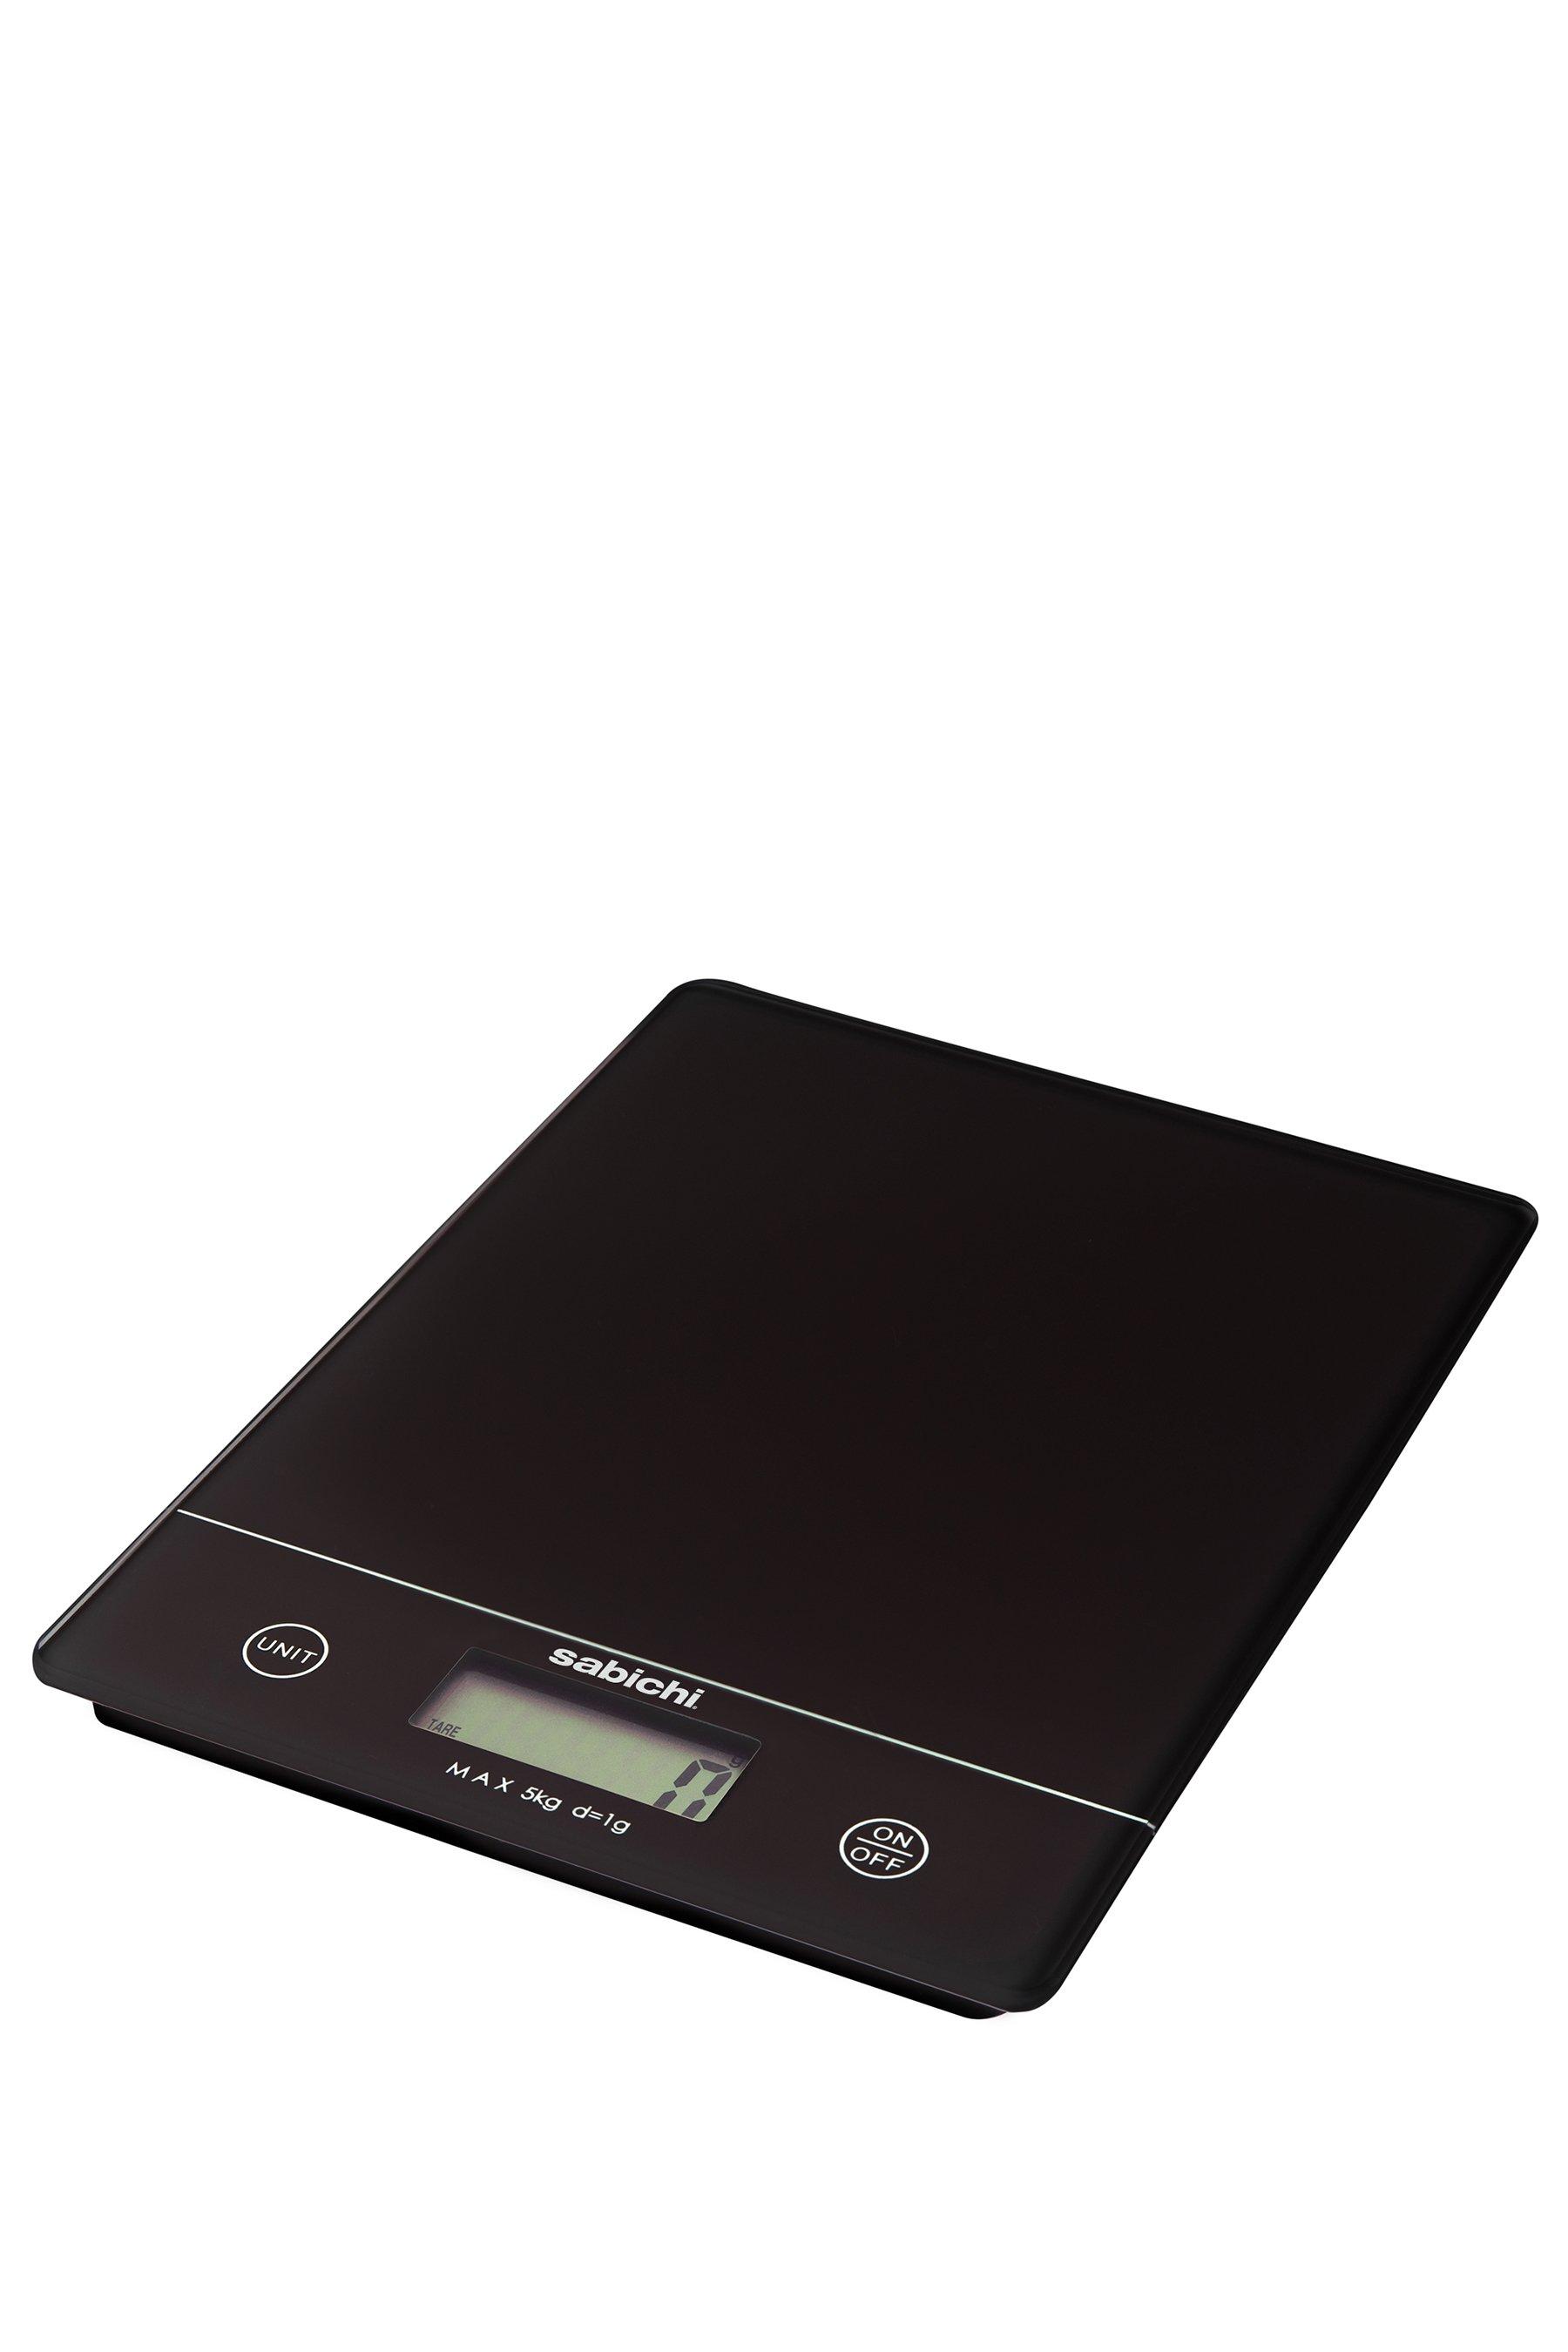 sabichi digital kitchen scales - black